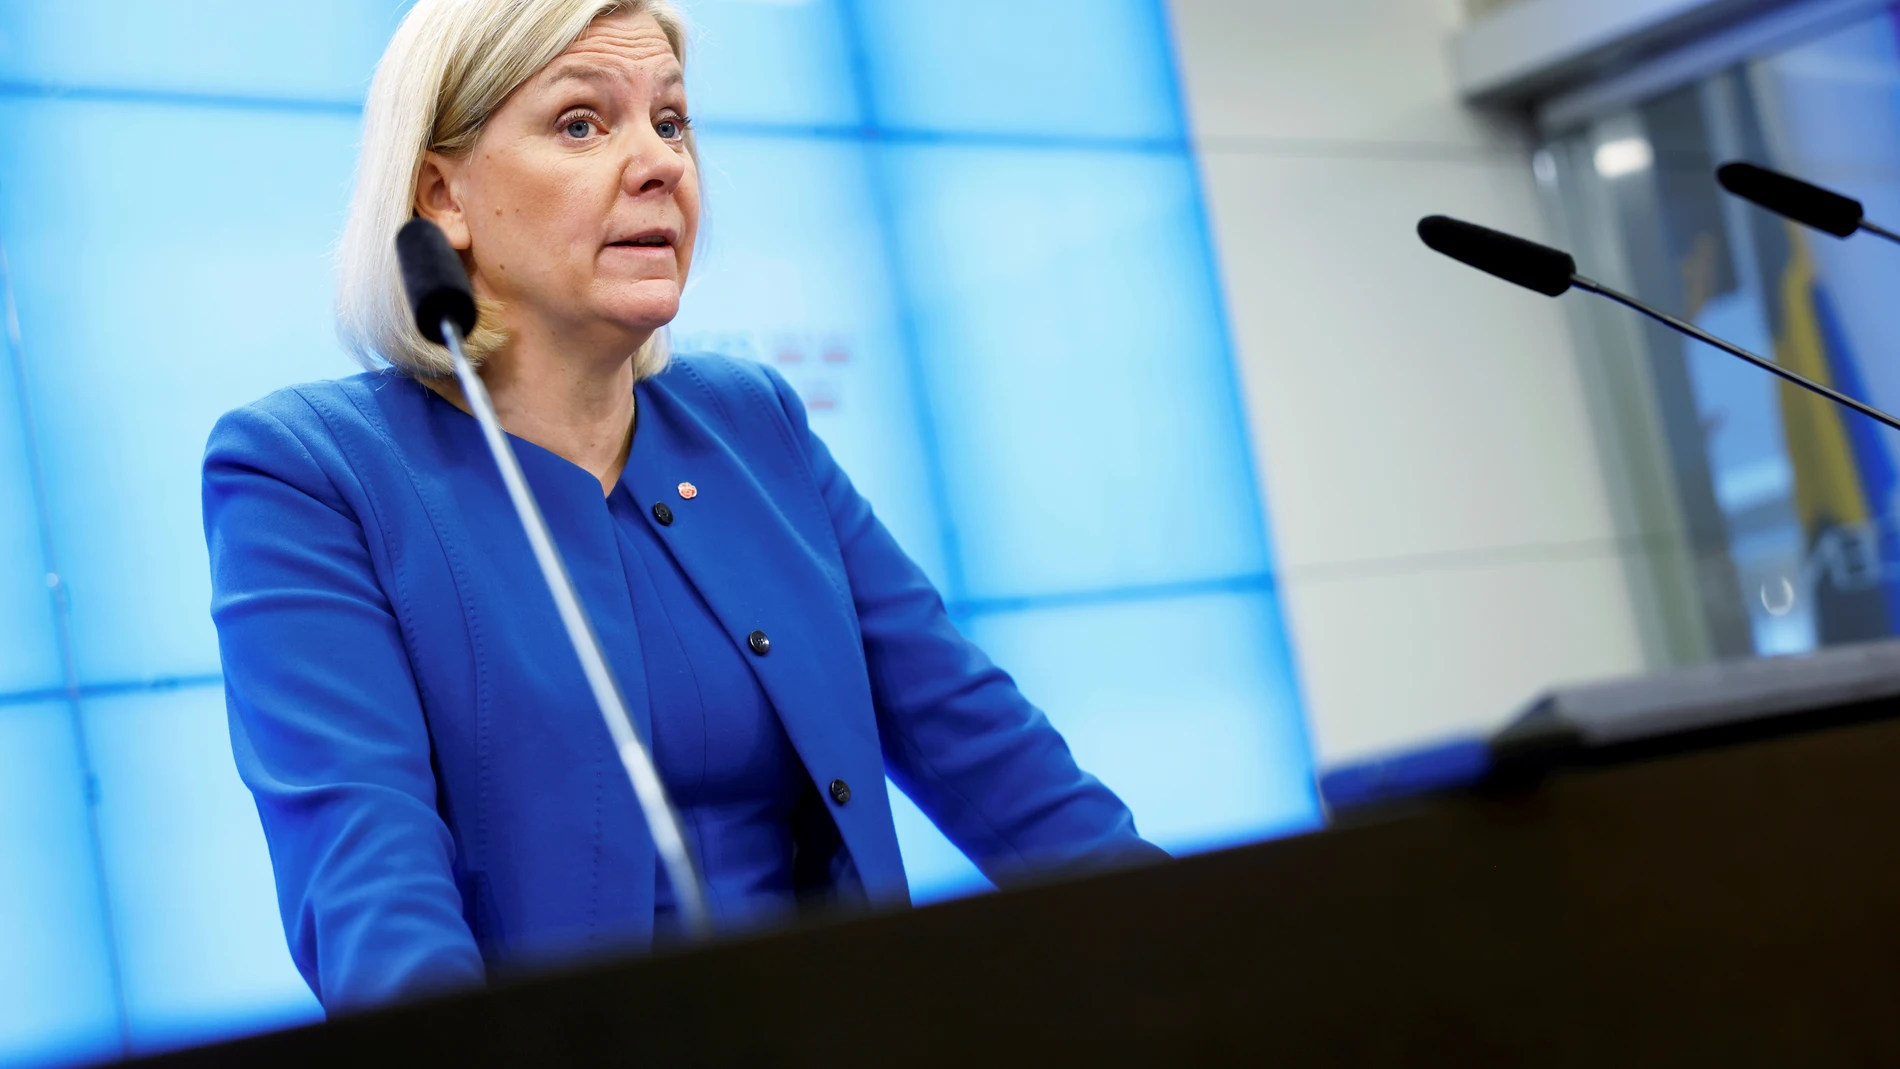 La socialdemócrata Magdalena Andersson se somete hoy a su investidura como primera ministra de Suecia